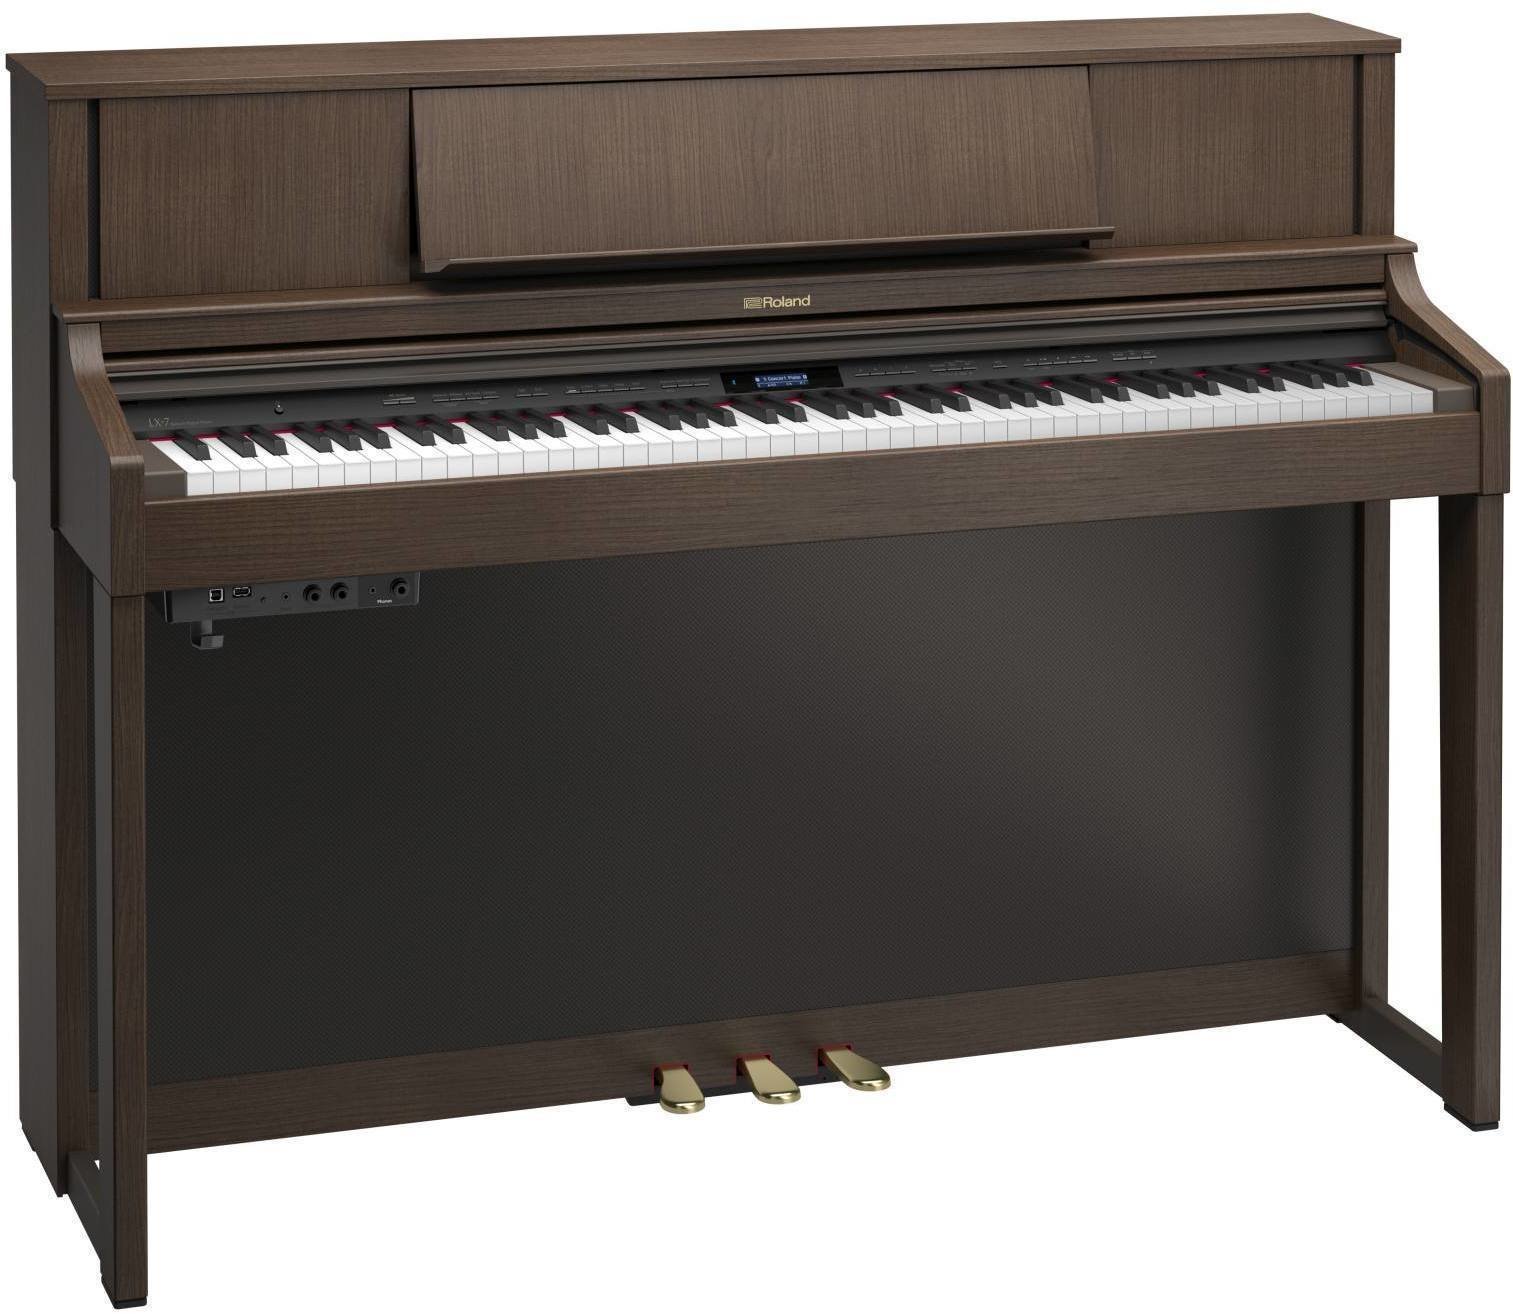 Ψηφιακό Πιάνο Roland LX-7 BW